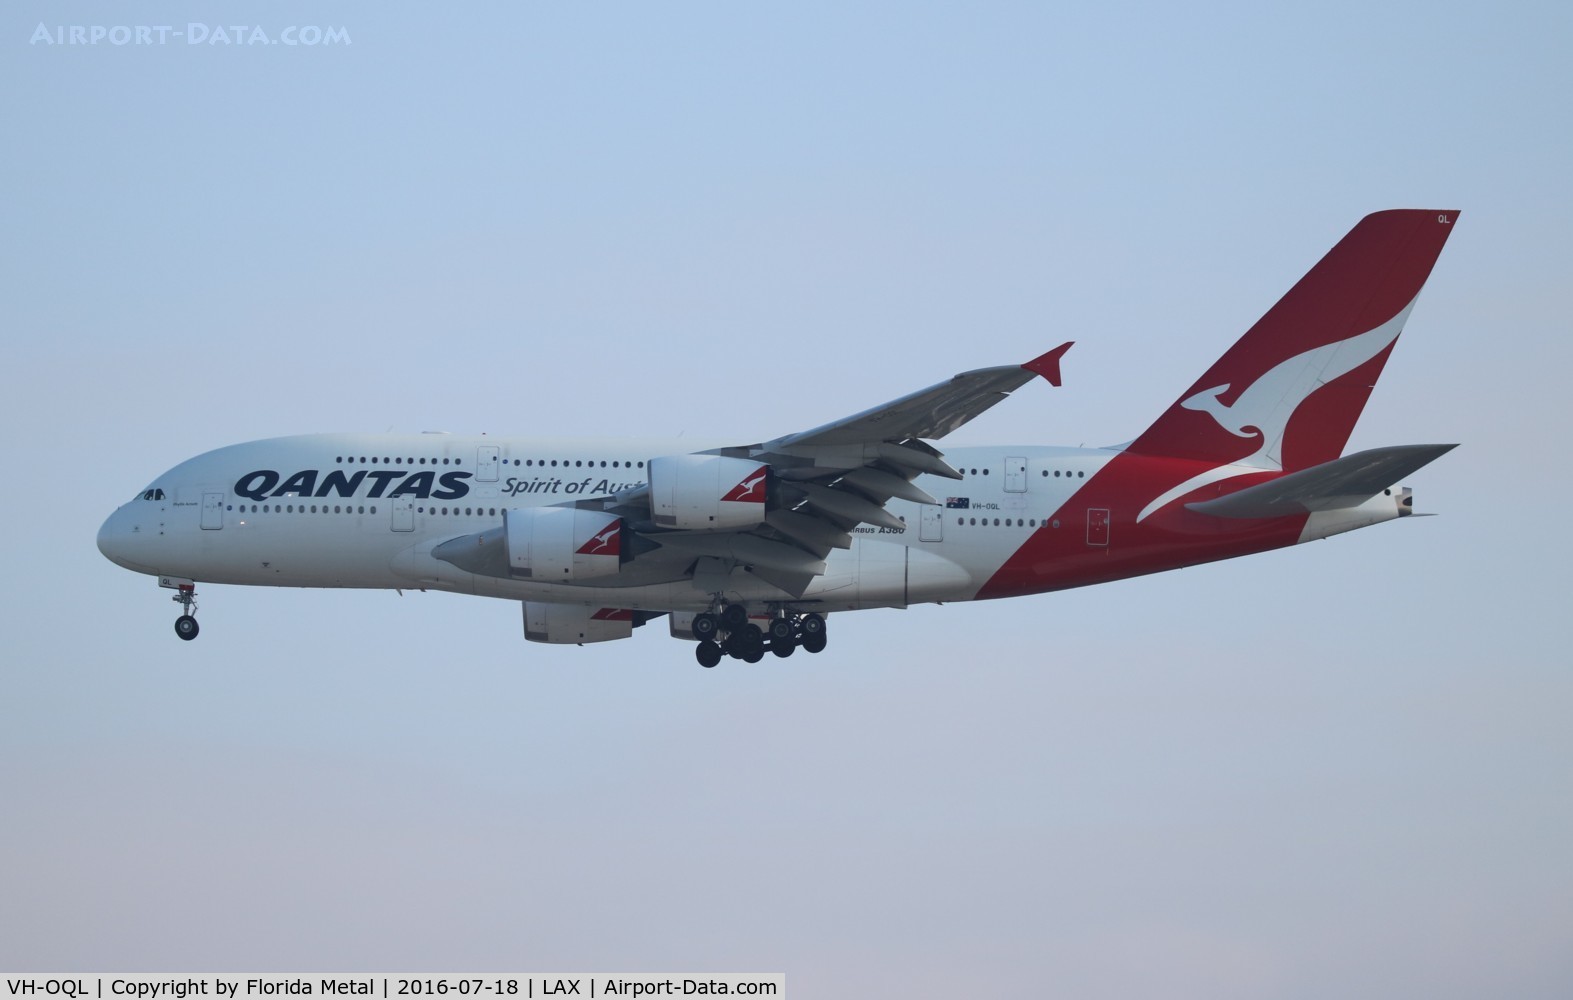 VH-OQL, 2011 Airbus A380-842 C/N 074, Qantas